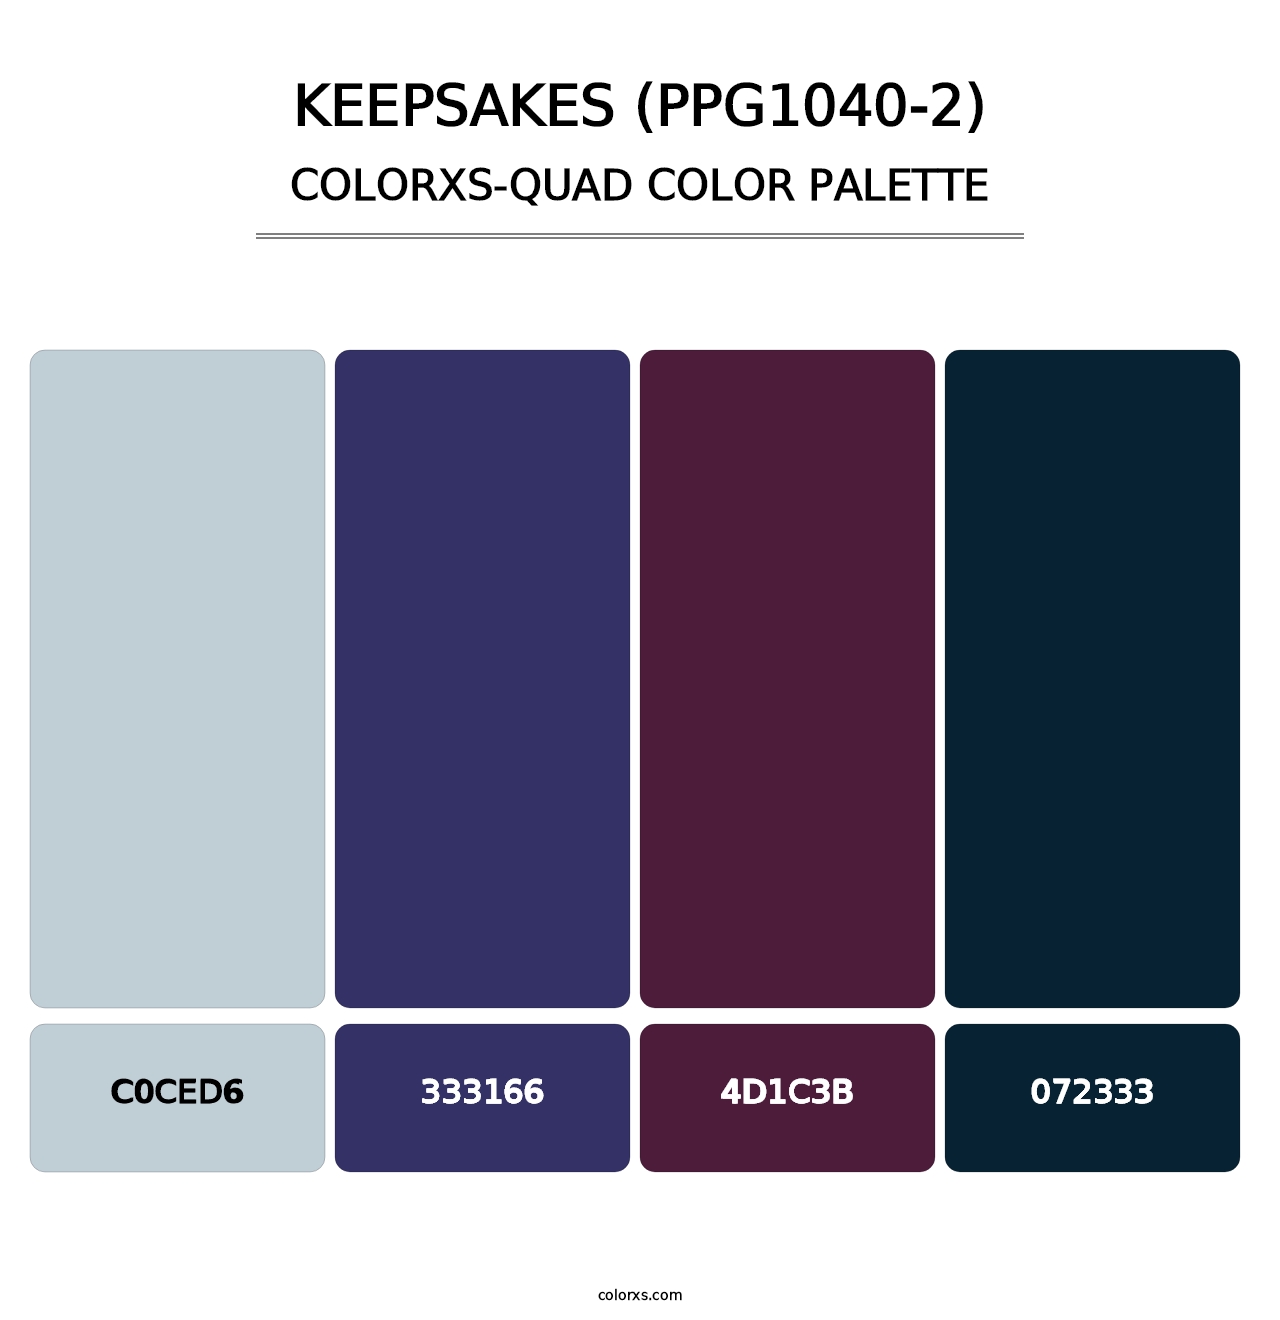 Keepsakes (PPG1040-2) - Colorxs Quad Palette